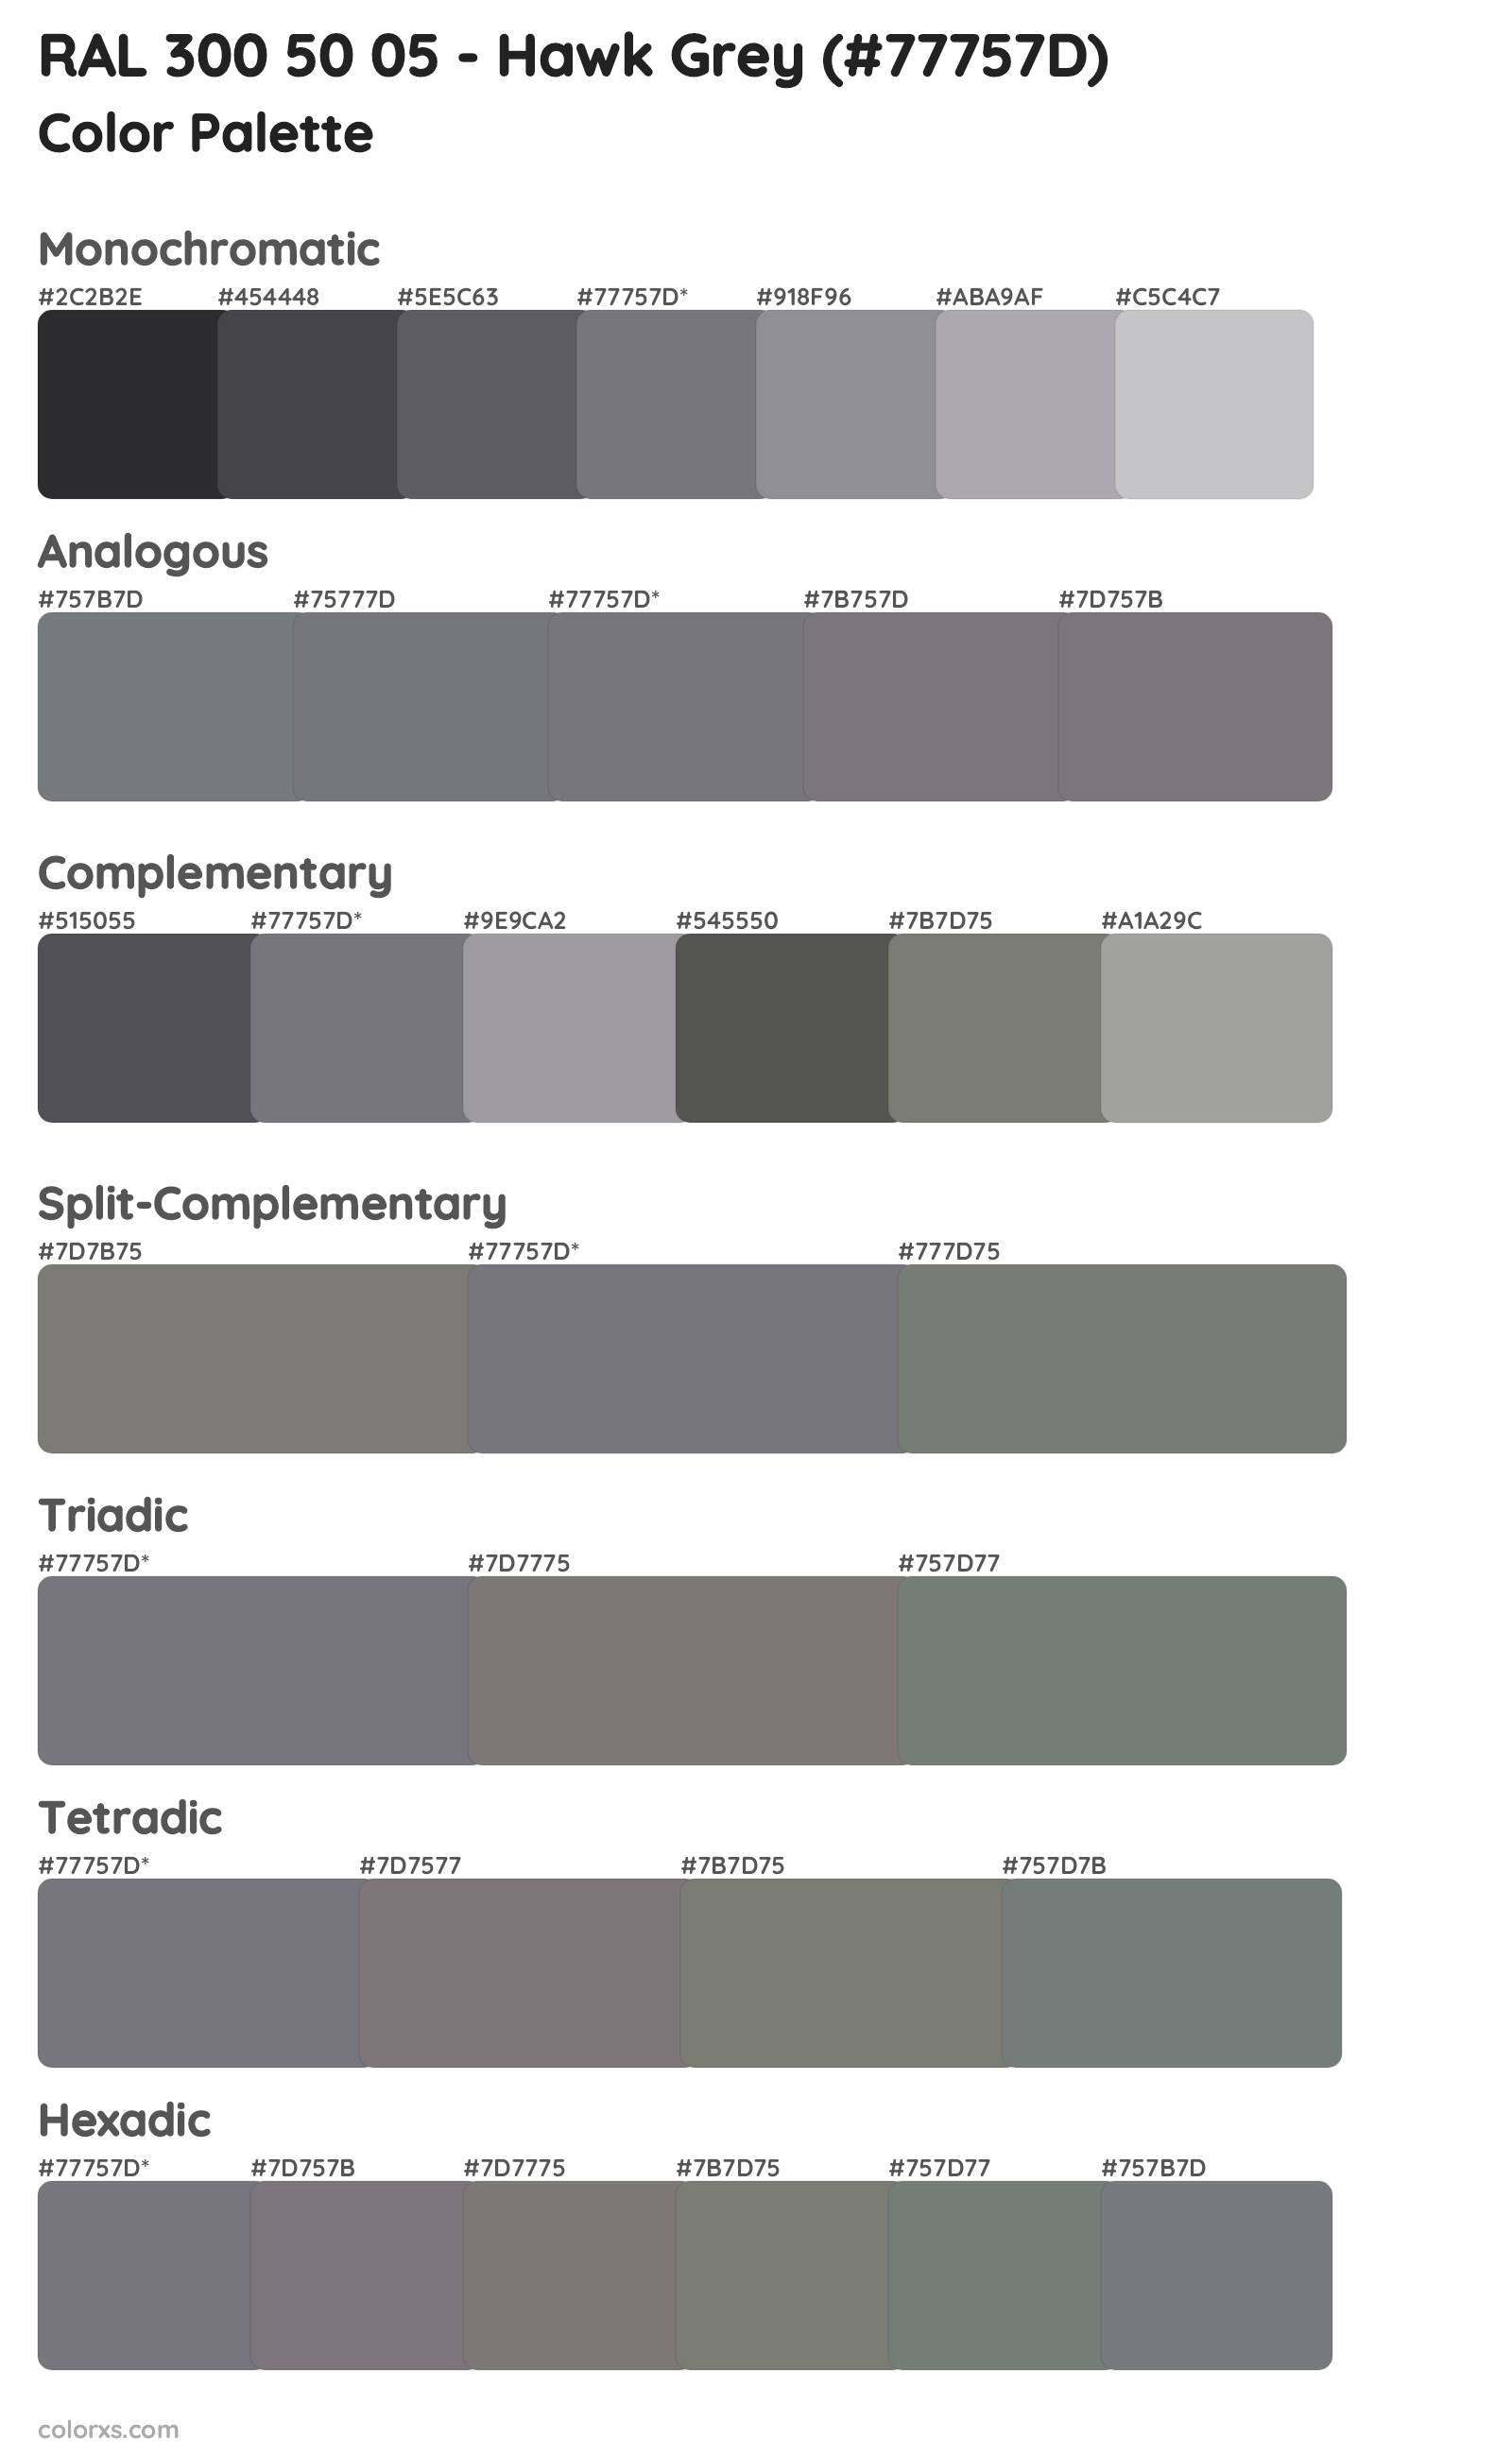 RAL 300 50 05 - Hawk Grey Color Scheme Palettes